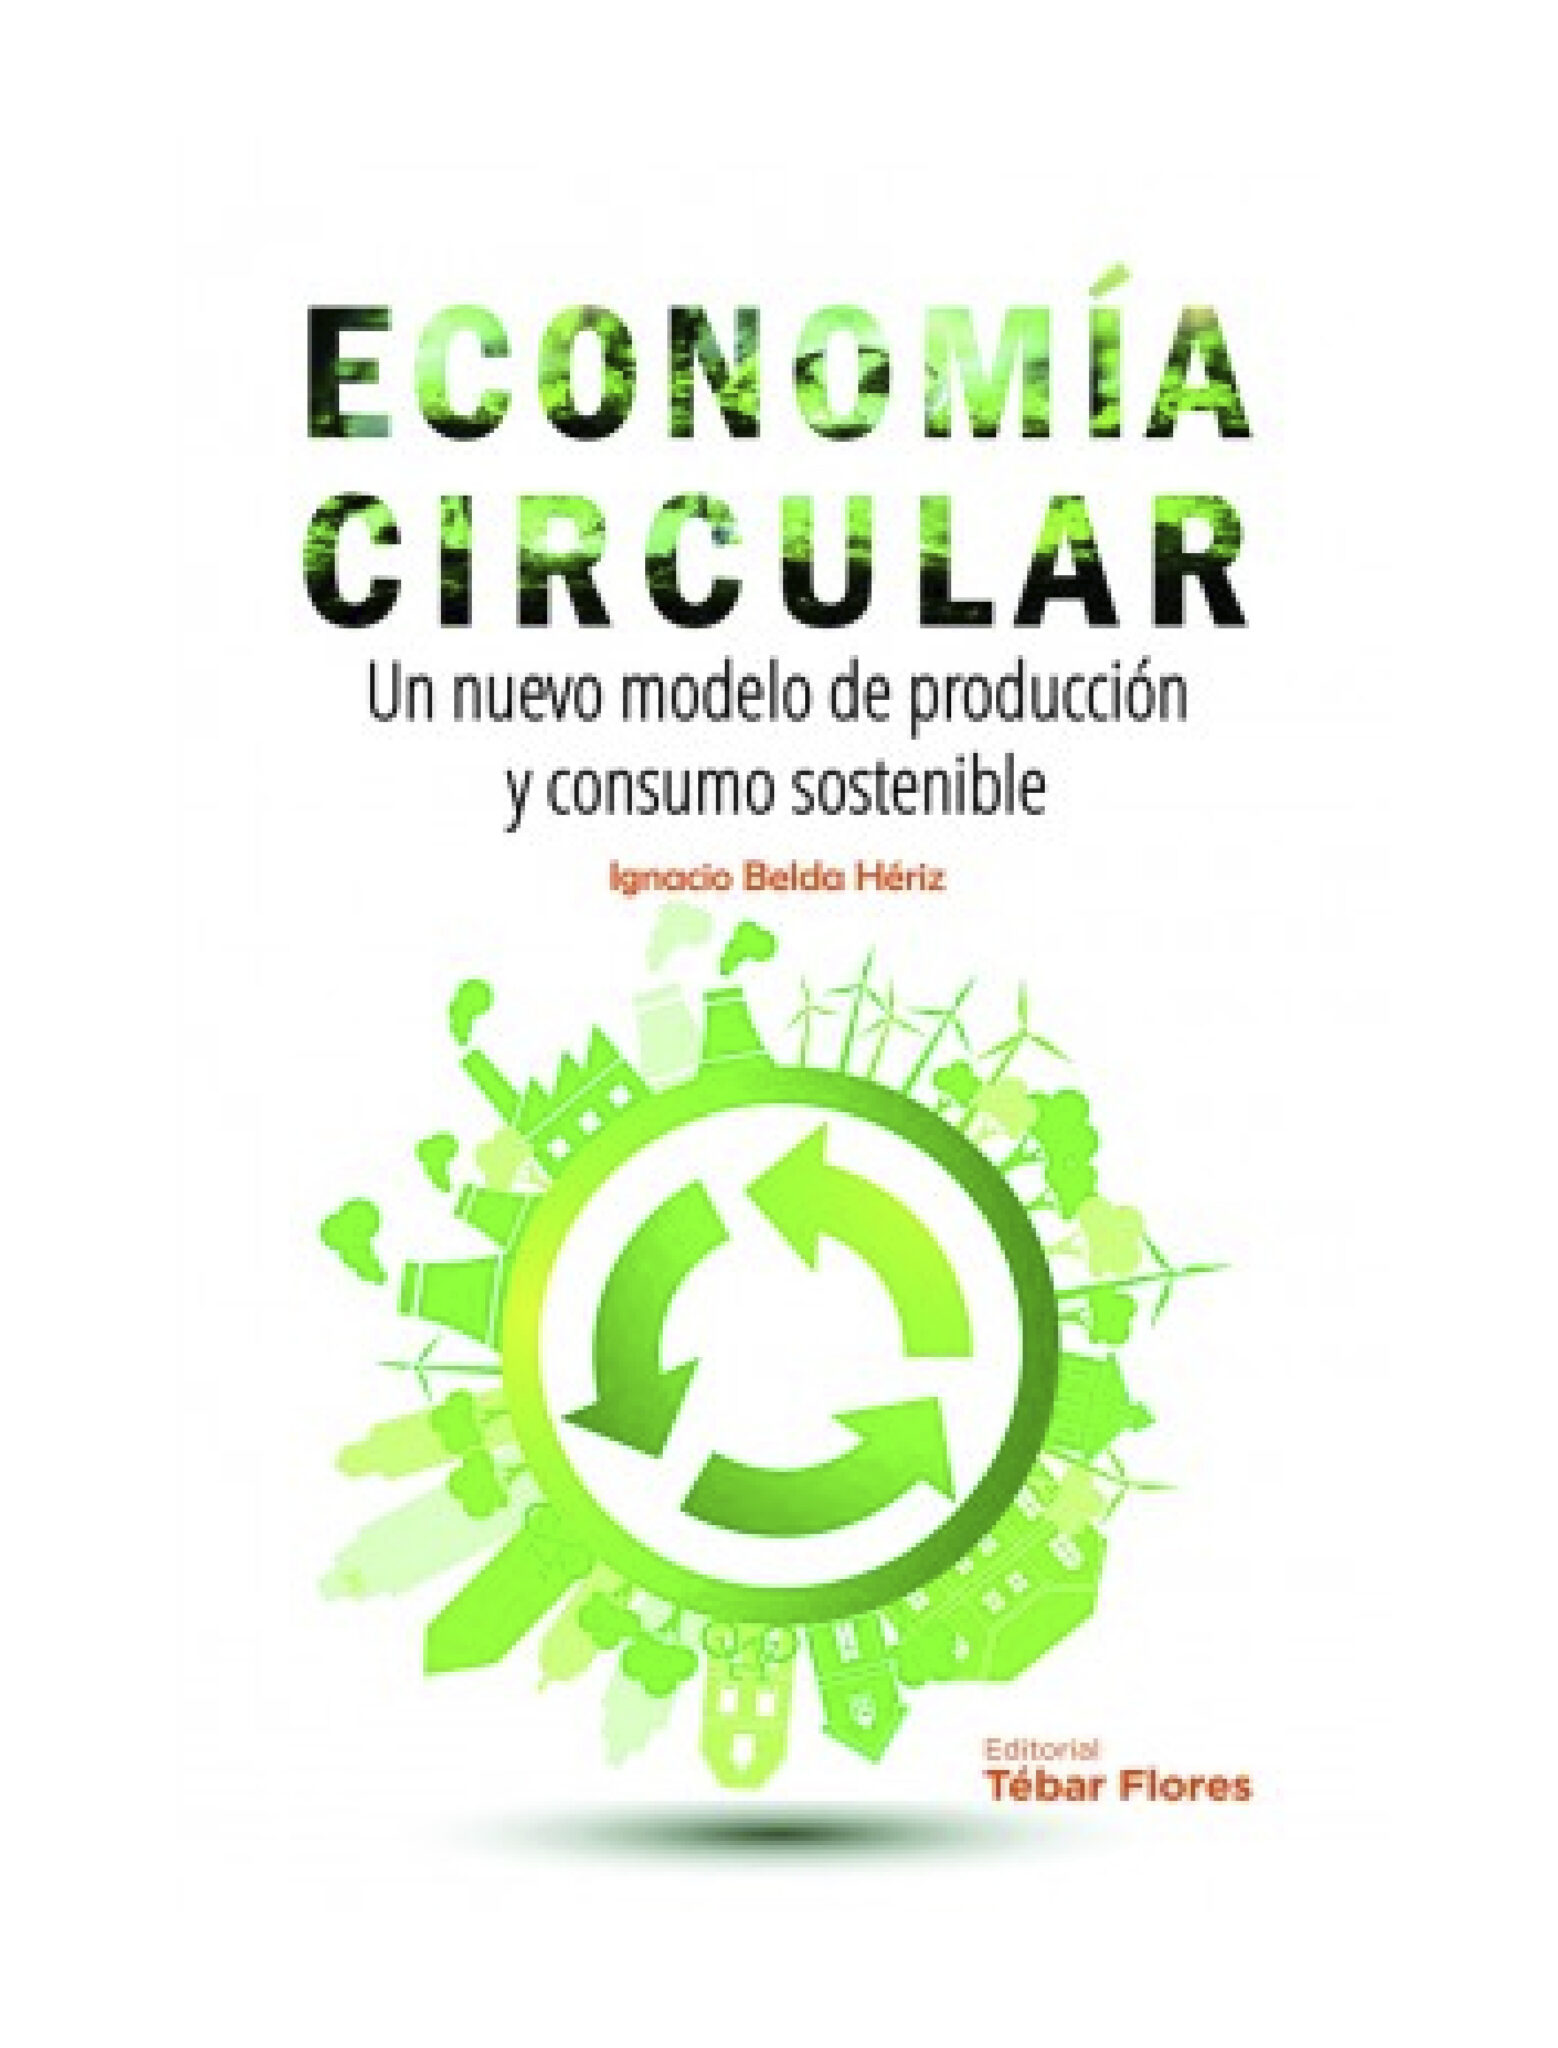 Hifas da Terra desarrollará soluciones de economía circular con el